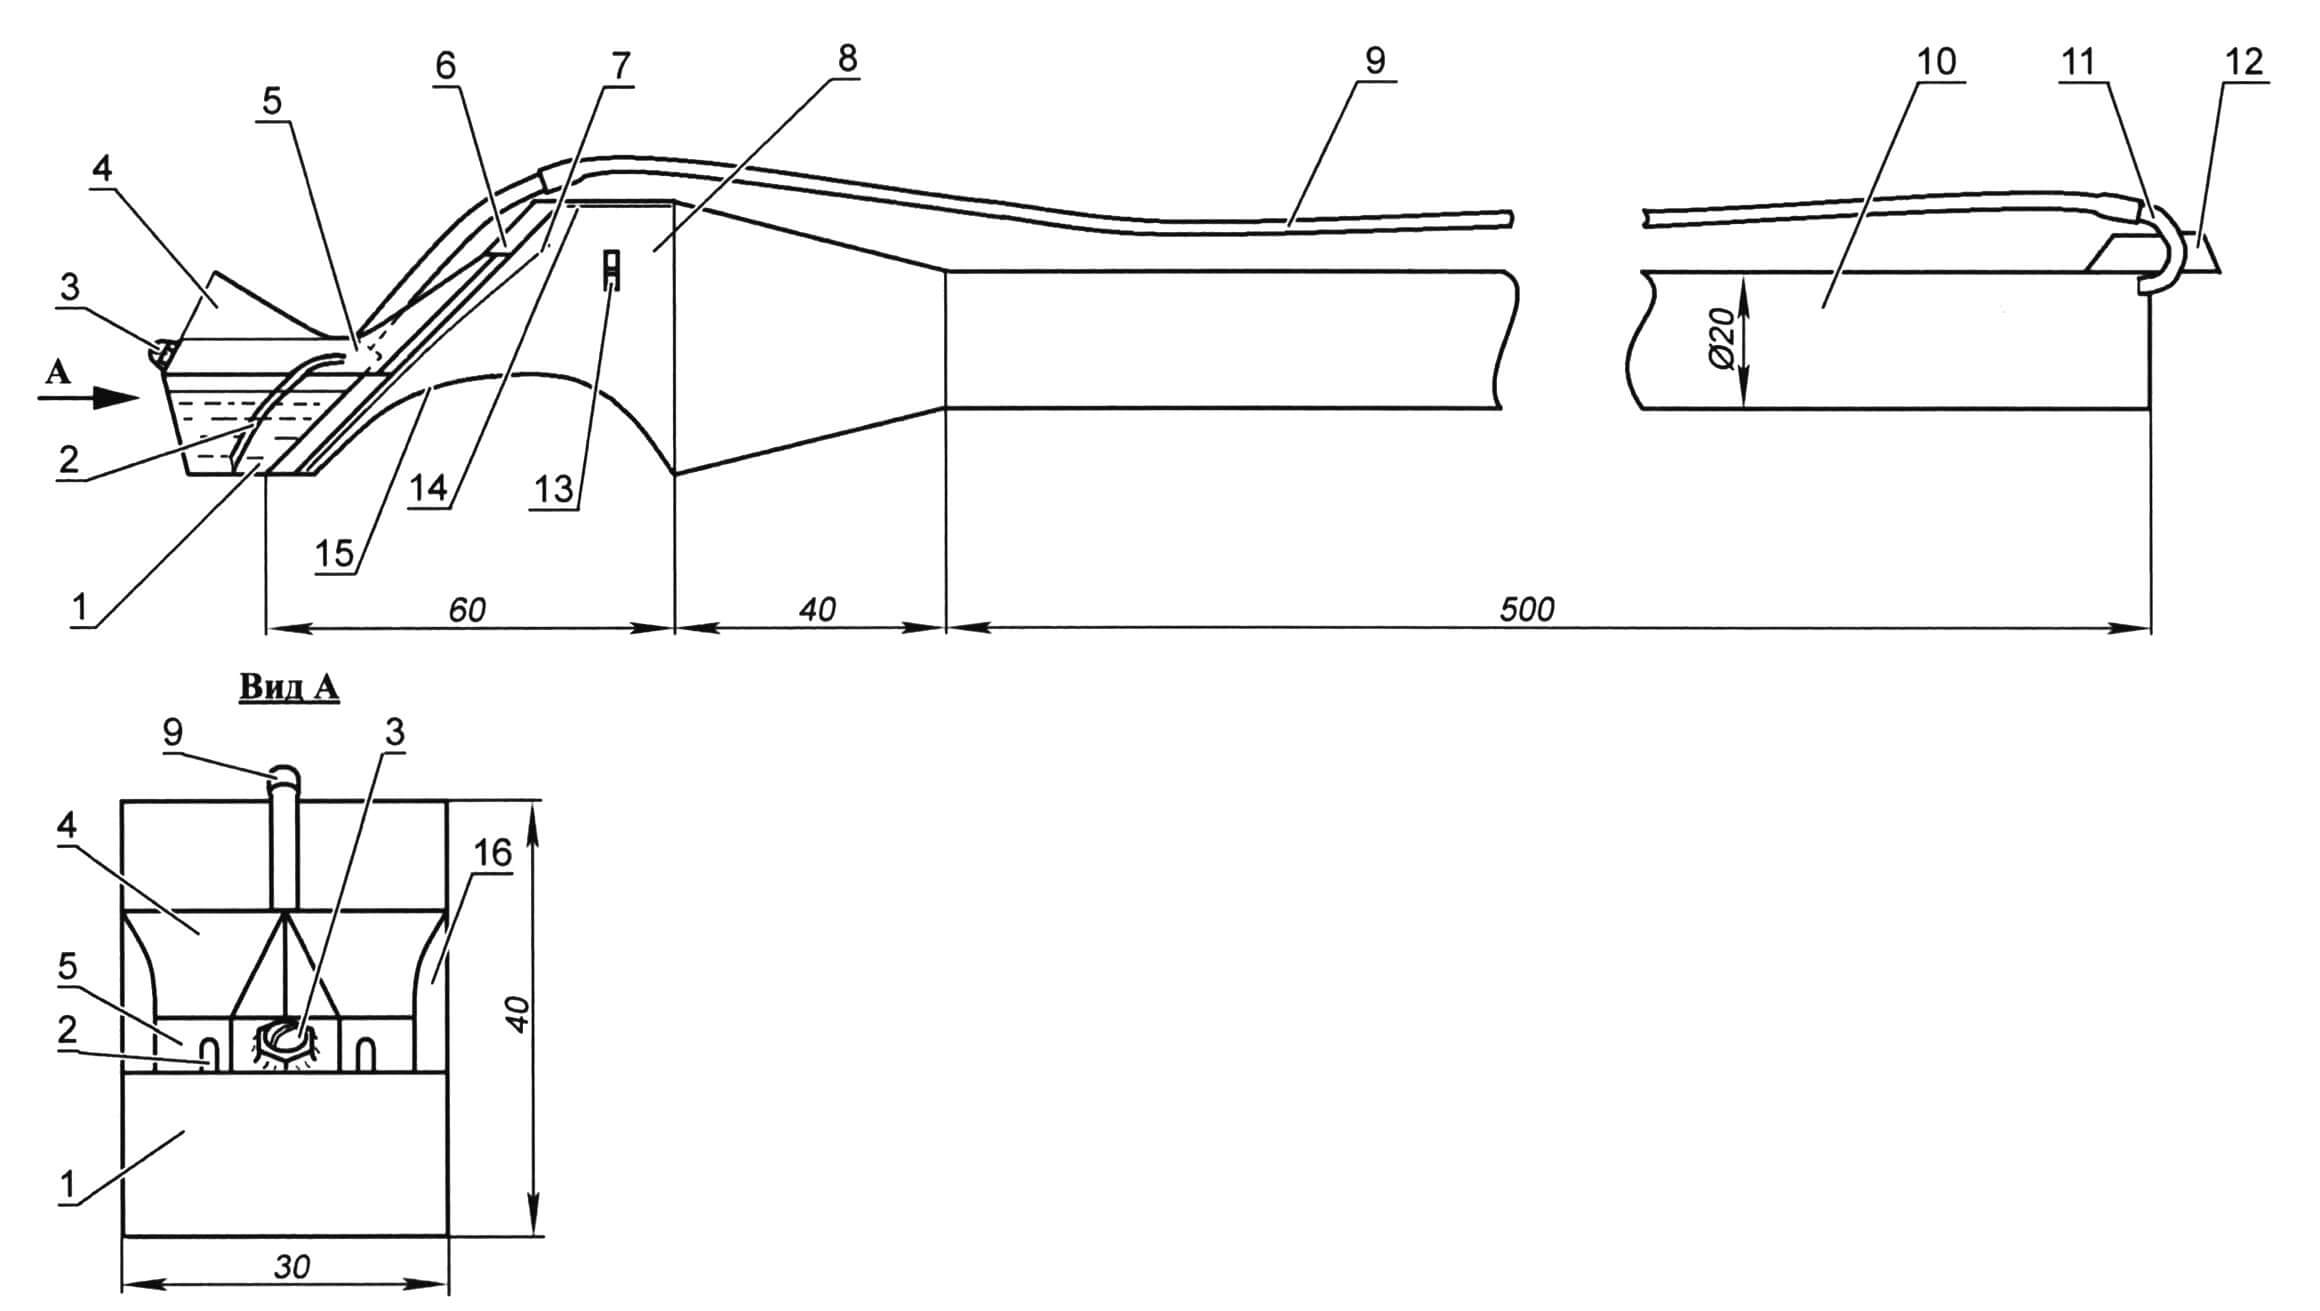 Самодельный реактивный двигатель: 1 - бензобак (белая жесть); 2 - распылительная трубка; 3 - заливная горловина; 4 - верх входной части канала (бумага); 5 - канал карбюратора (белая жесть); 6 - клапанная решетка (фанера толщиной 3 мм); 7 - клапан (Al-жесть); 8 - рабочая камера (бумага); 9 - трубка наддува (термоусадочная трубка); 10 - выхлопная труба (бумага); 11 - патрубок наддува; 12 - уголок крепления патрубка (бумага); 13 - свеча зажигания; 14 - отражатель (фольга); 15 - выемка; 16 - внешняя стенка канала карбюратора